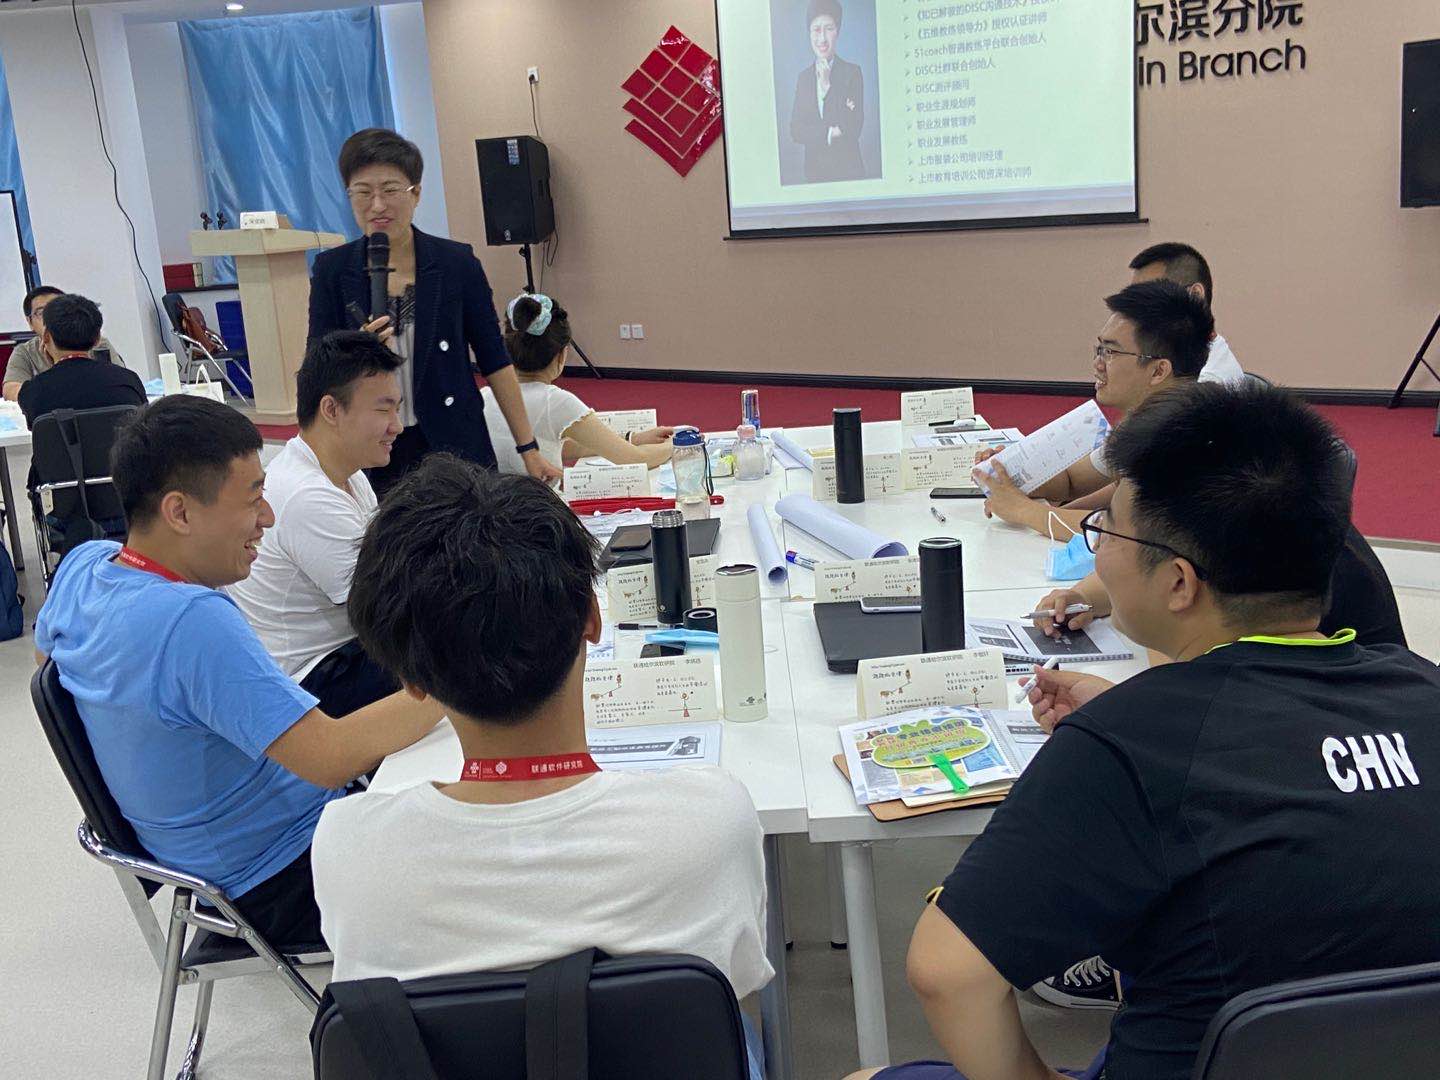 7月29日宋奕晓老师为哈尔滨联通能源科技有限公司新员工讲授《新员工角色转换》圆满完成